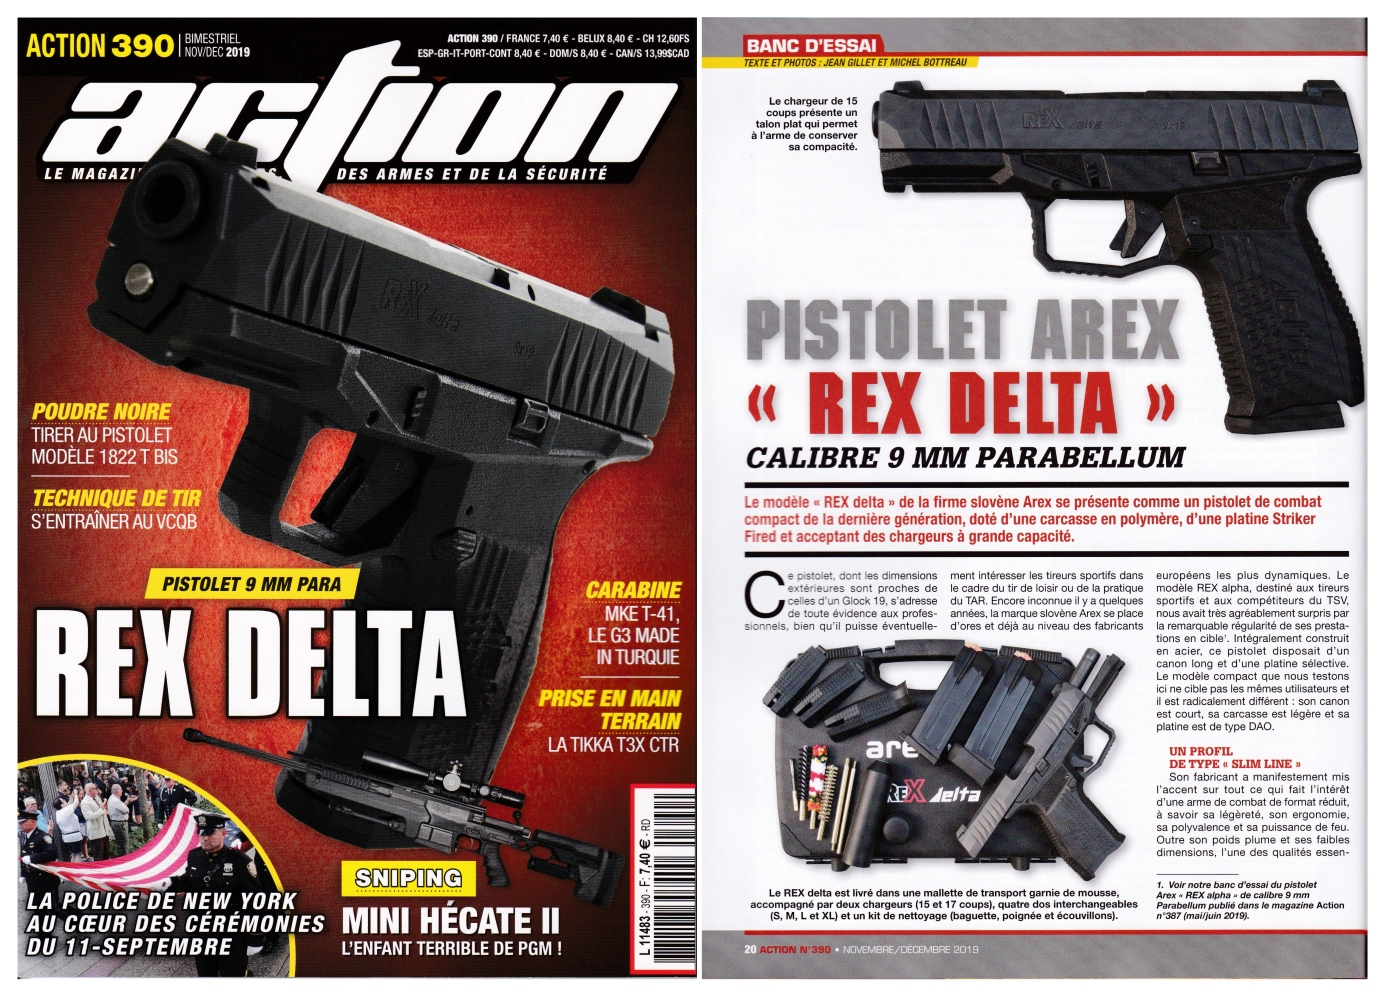 Le banc d’essai du pistolet Arex Rex Delta a été publié sur 6 pages dans le magazine Action n°390 (novembre-décembre 2019). 